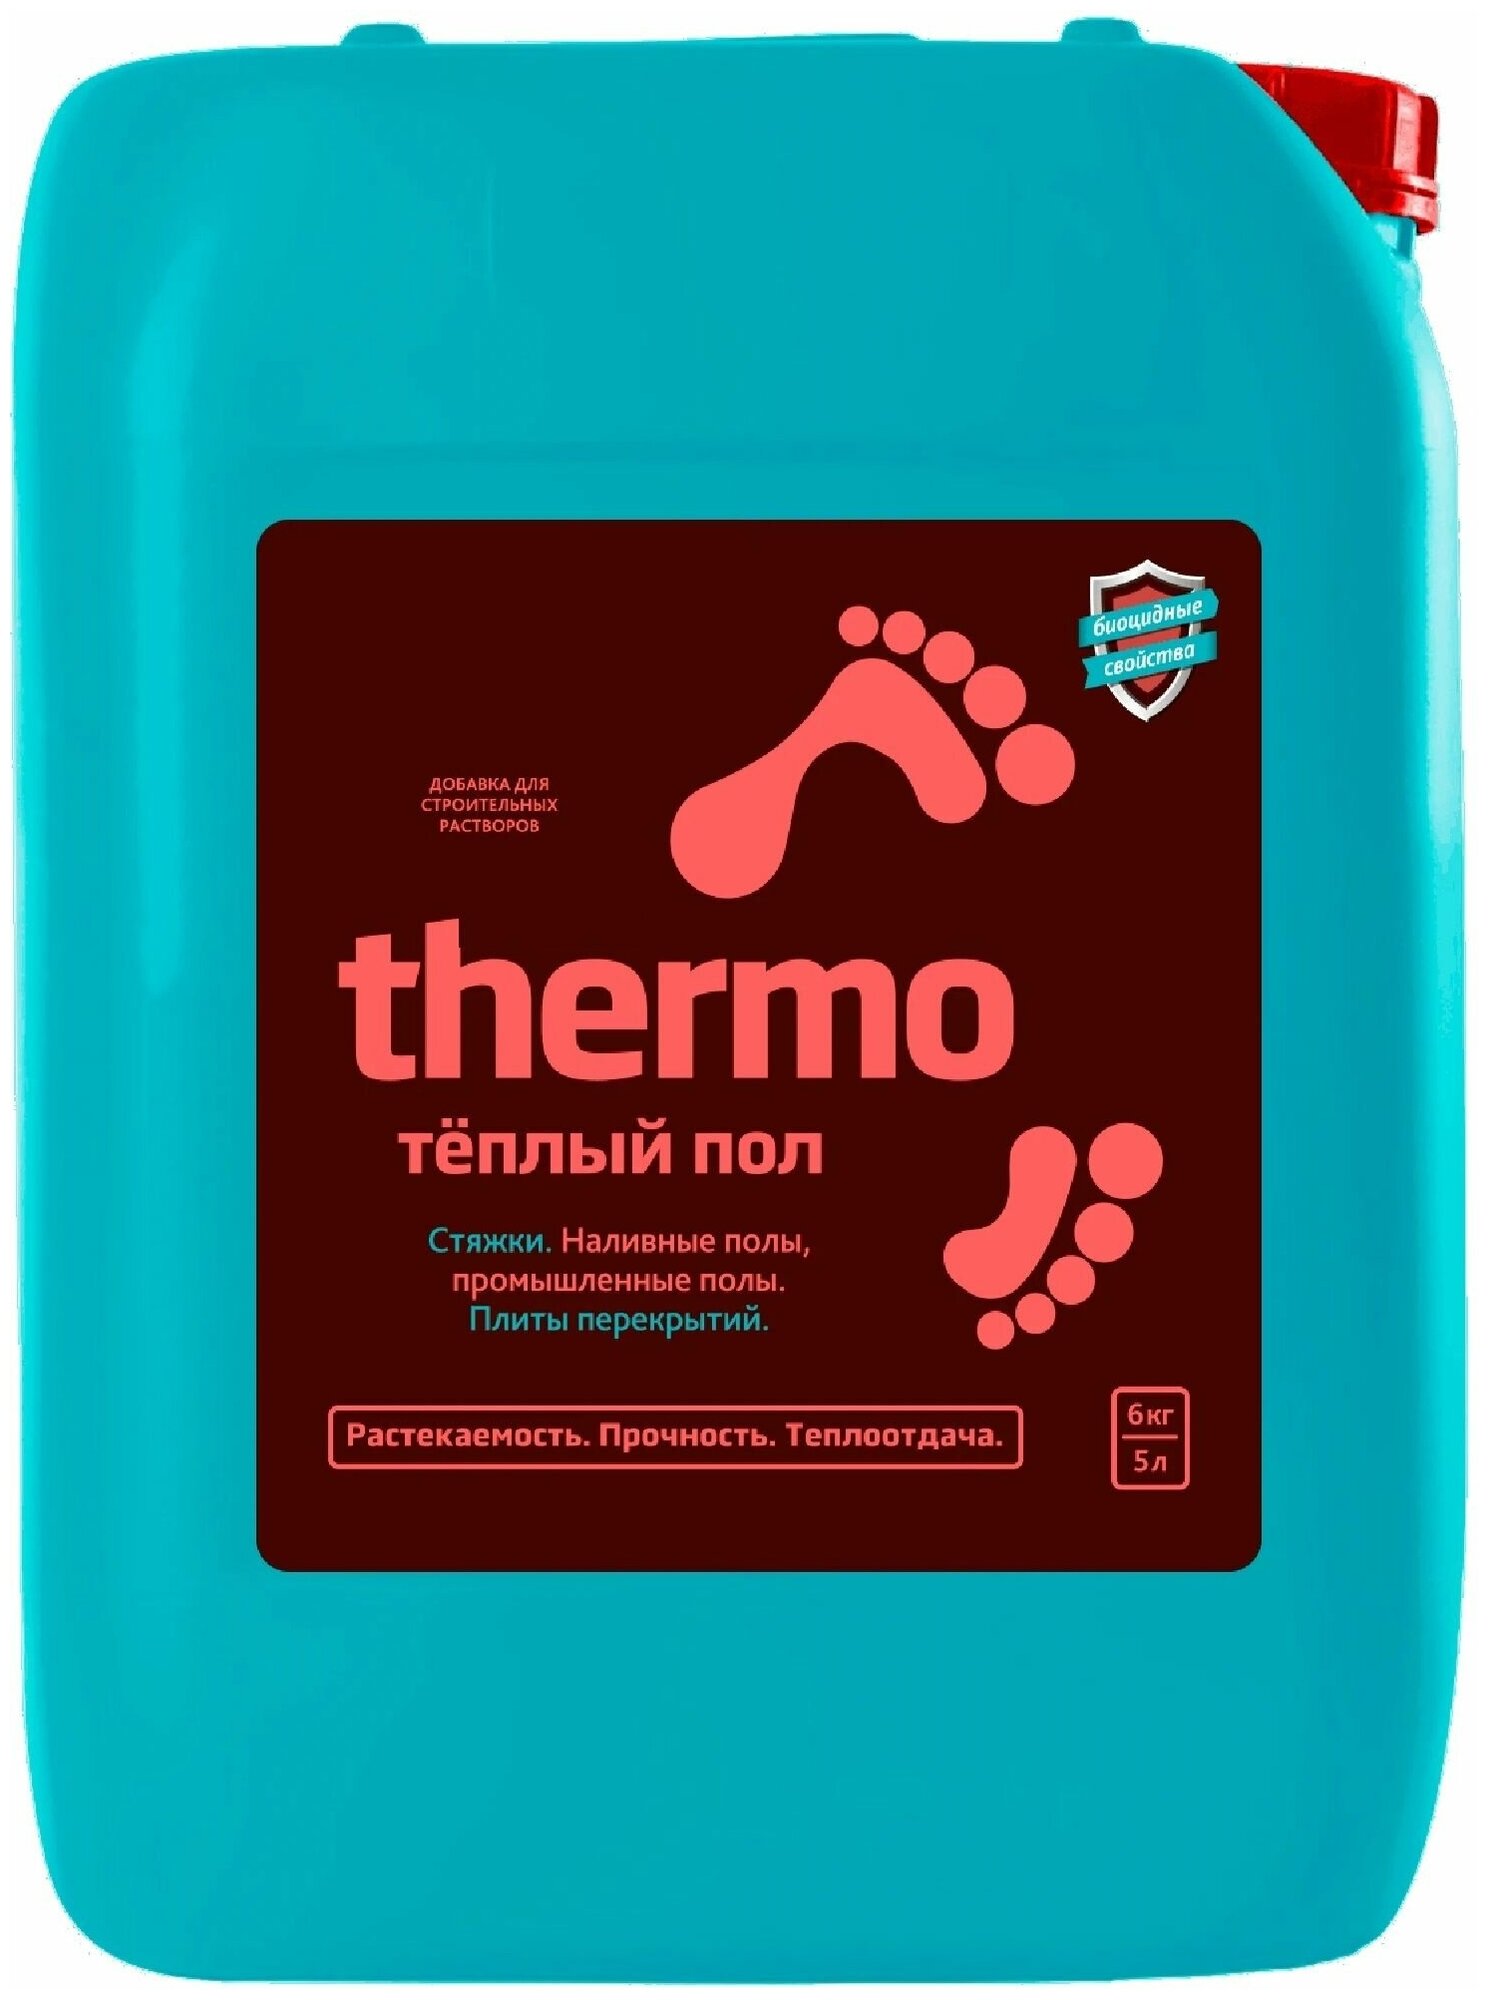 Добавка-пластификатор Termo 5 л вес 6 кг для заливки тёплых полов предотвращает образование трещин, обеспечивает гладкую поверхность, повышает удобств